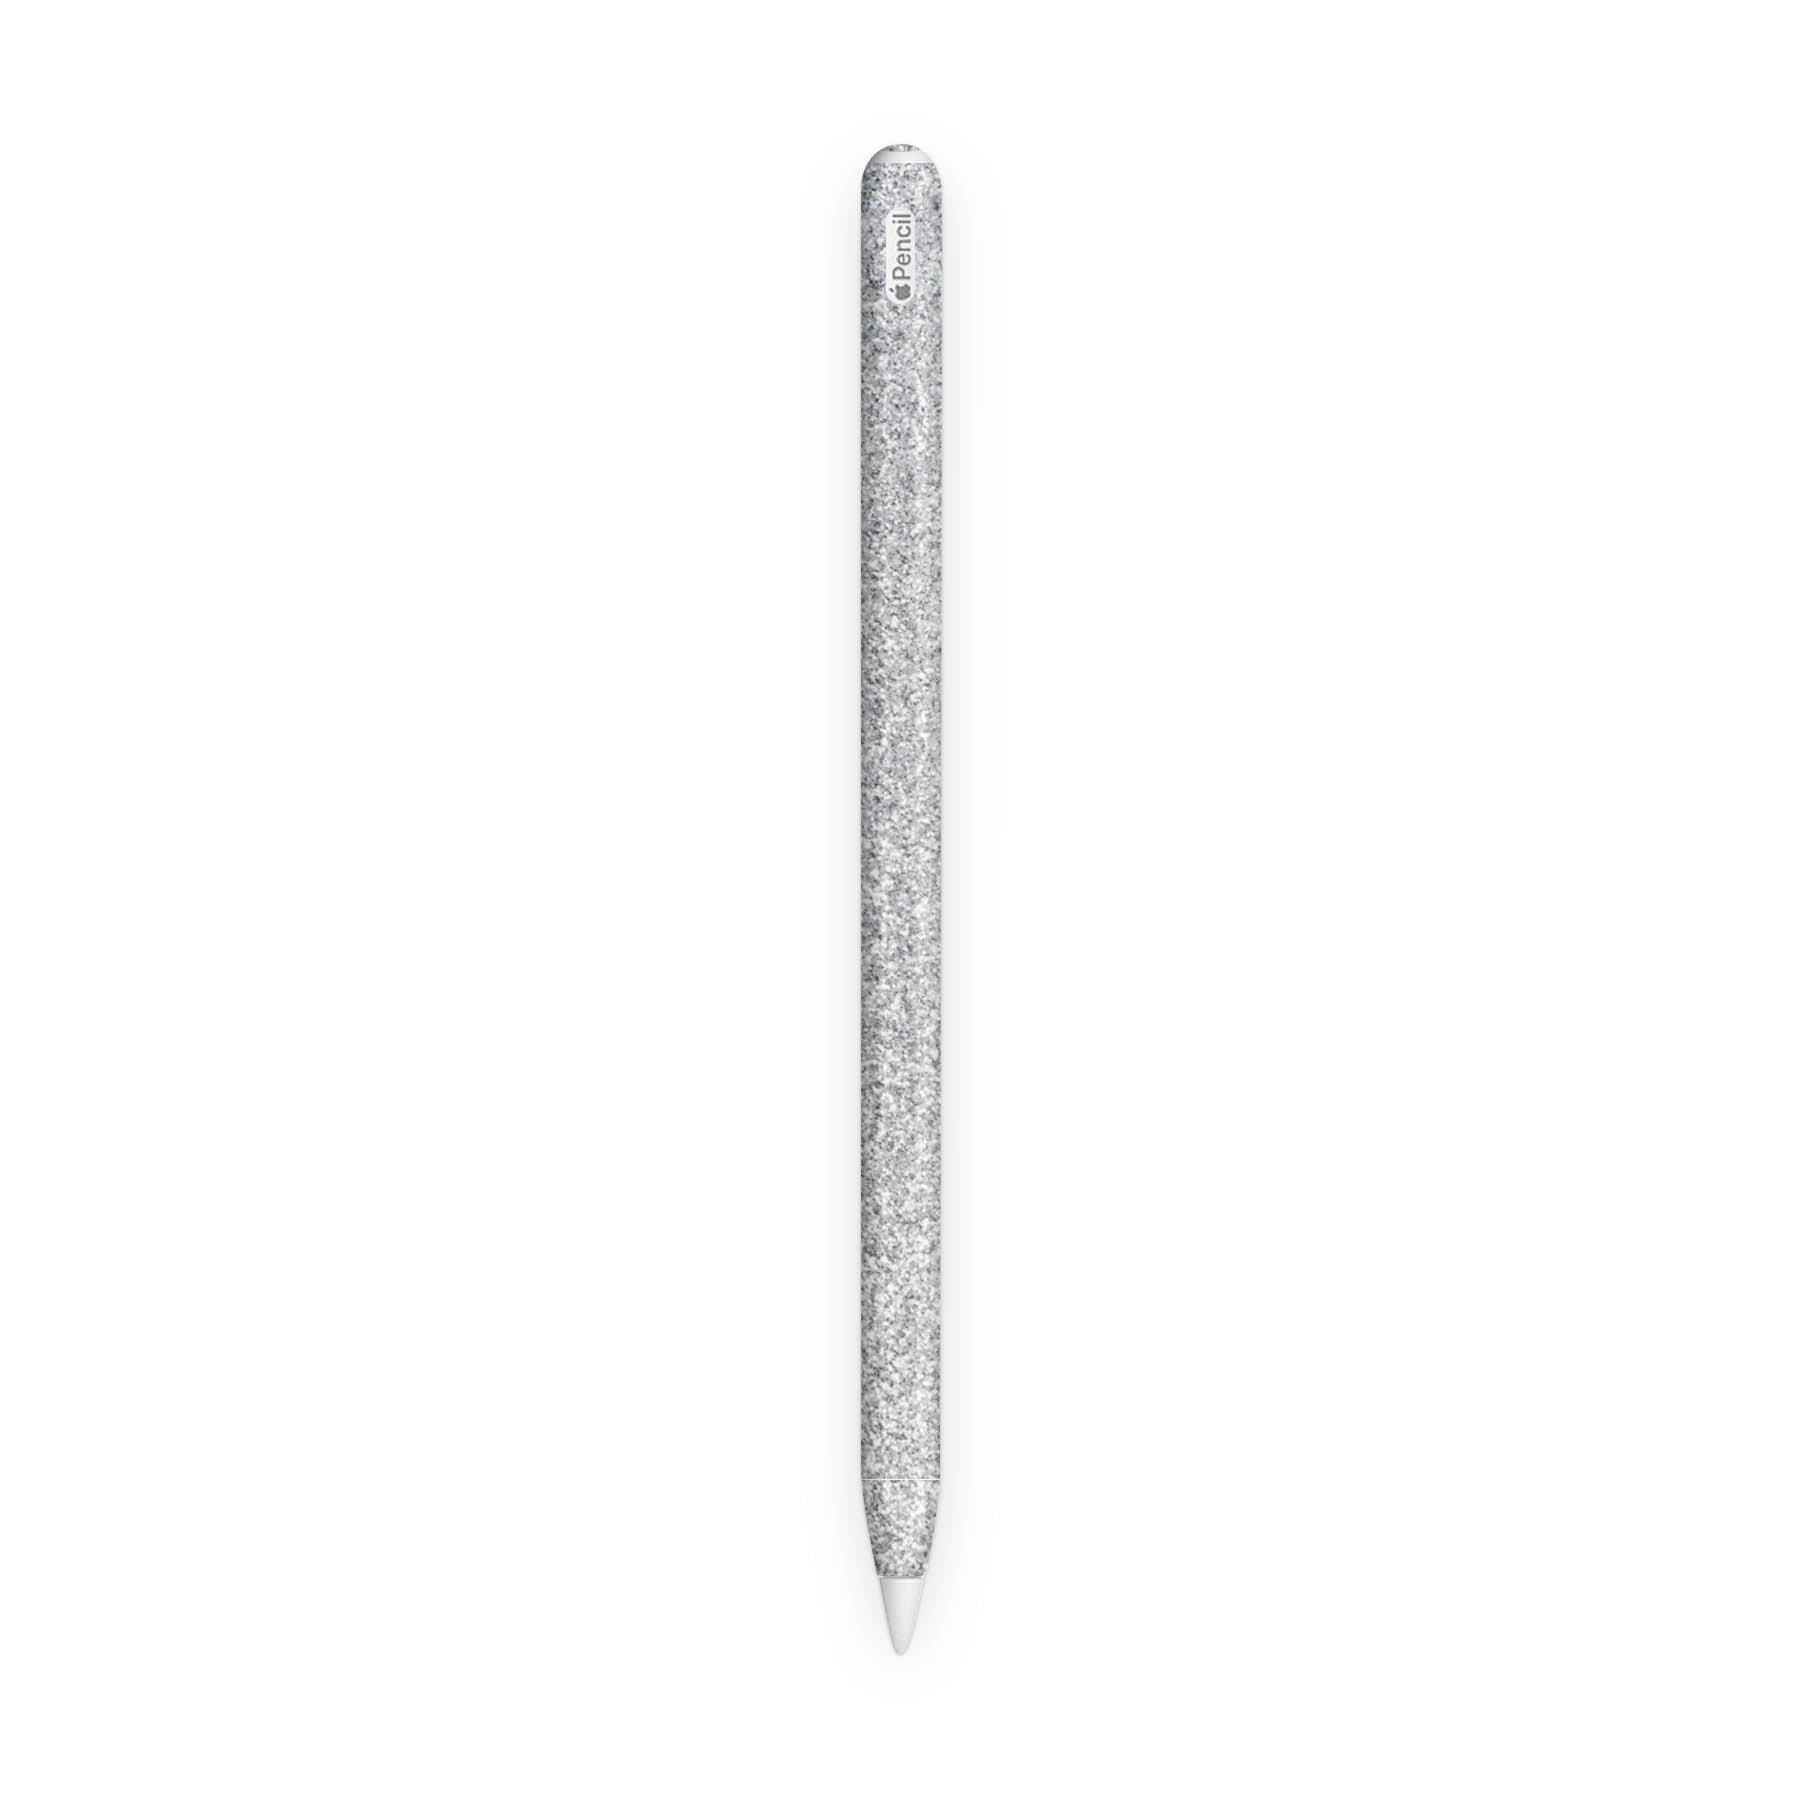 Blanc Glitter Pencil 2 Skin - Uniqfind